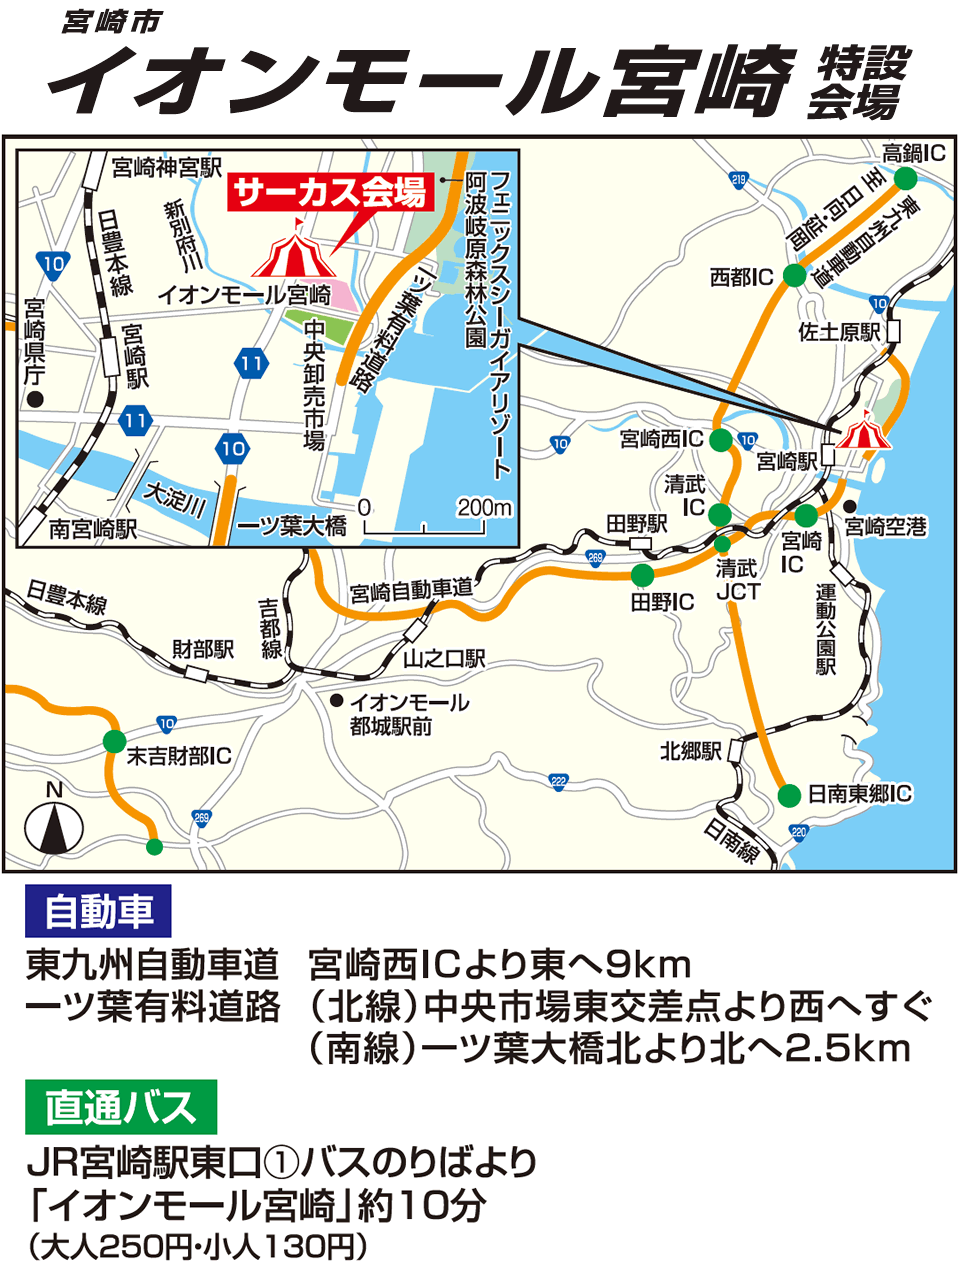 宮崎公演特設会場の地図